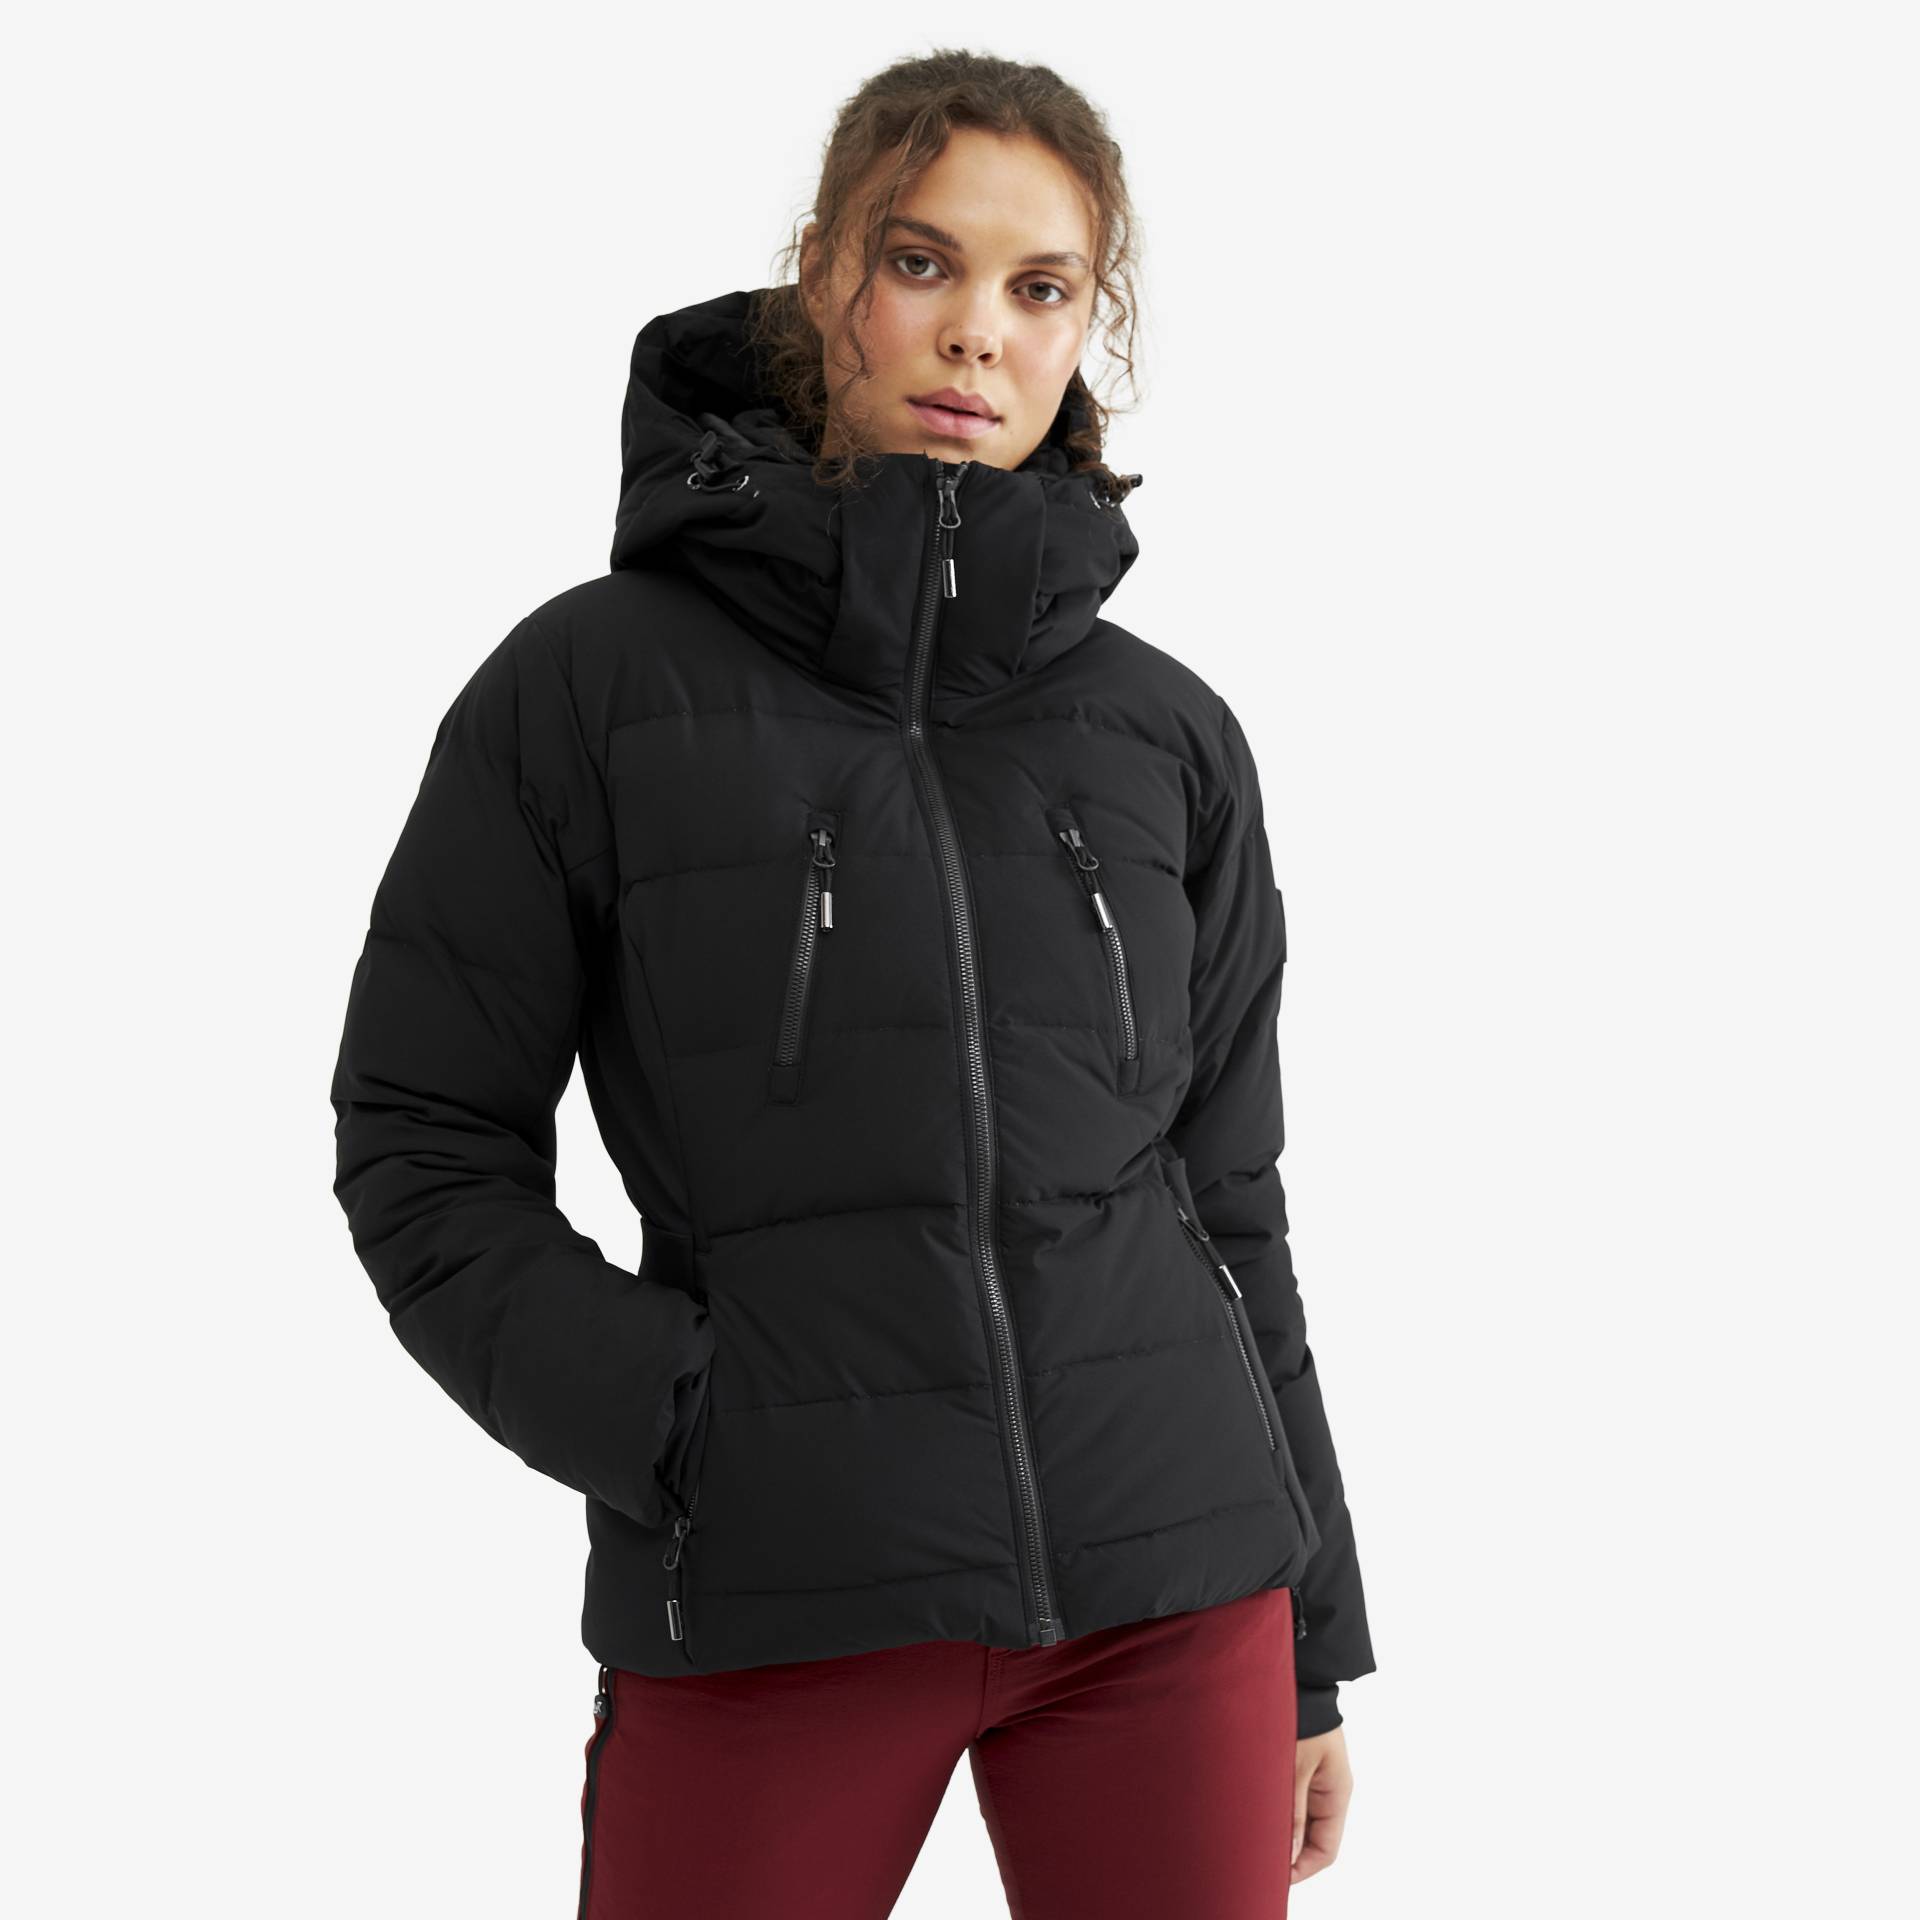 Igloo Jacket Damen Black, Größe:S - Skijacken von RevolutionRace